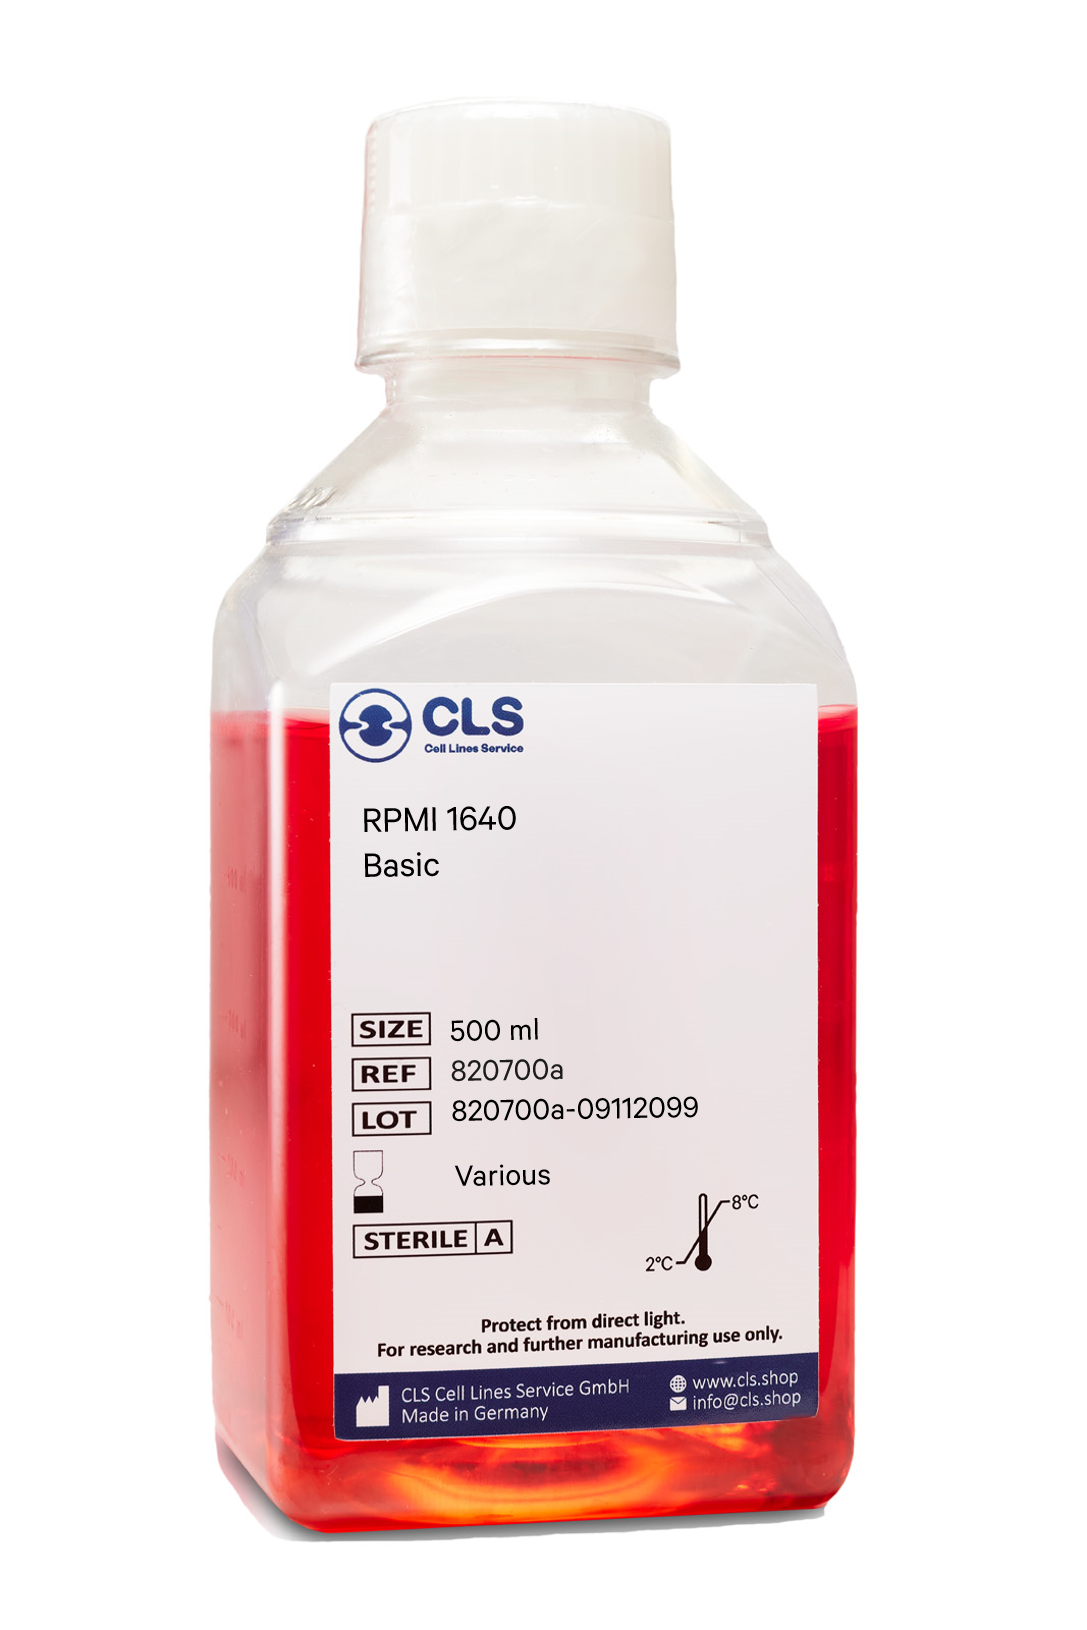 RPMI 1640, w: 4.5 g/L Glucose, w: 2 mM L-Glutamine, w: 10 mM HEPES, w: 1 mM Sodium pyruvate, w: 1.5 g/L NaHCO3